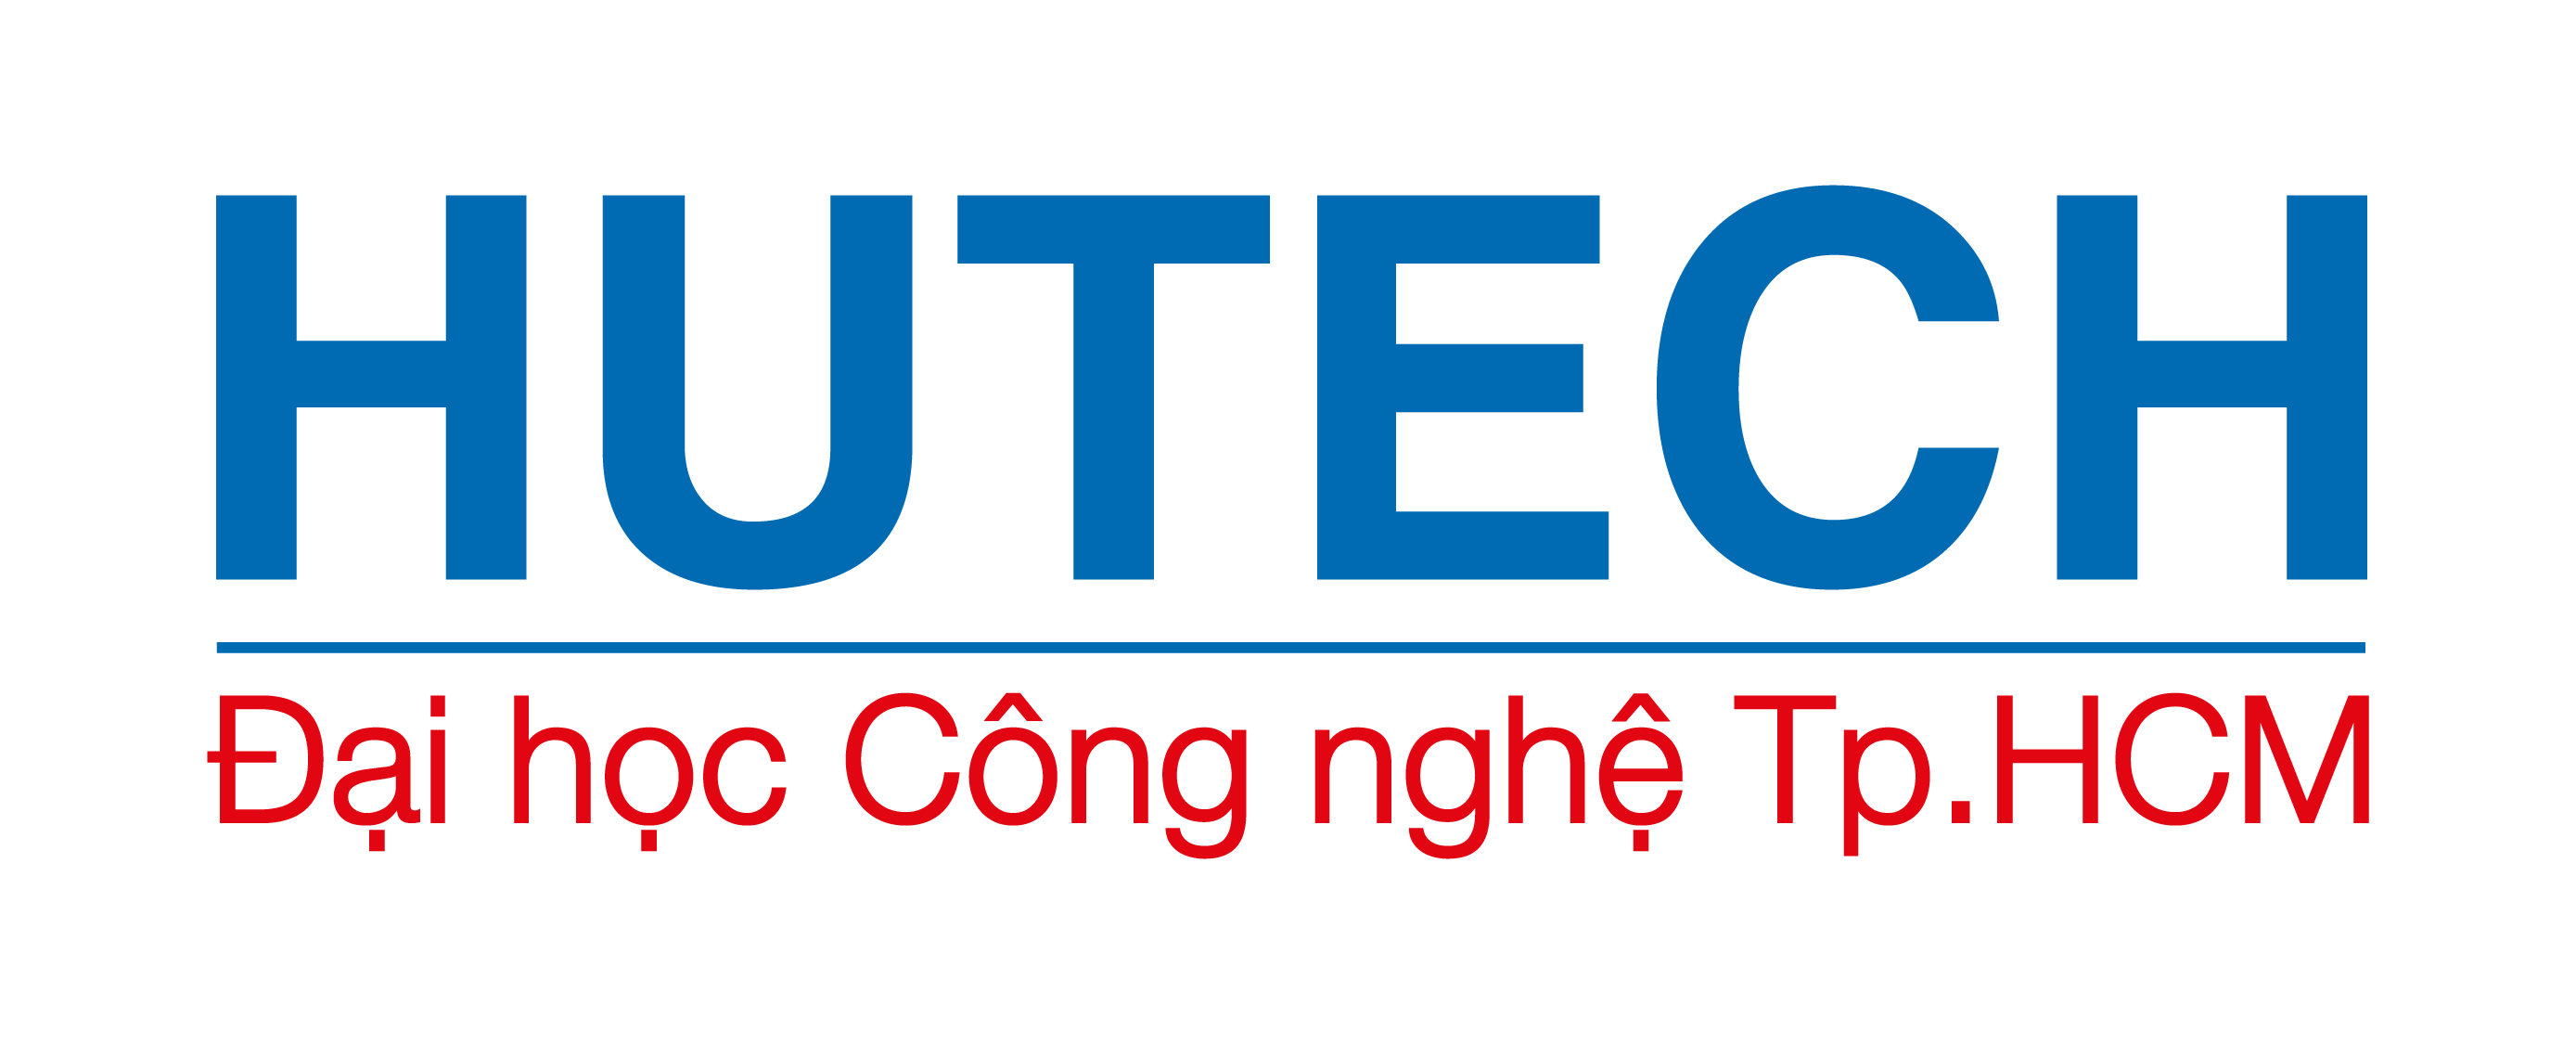 Ý nghĩa logo HUTECH: Logo của HUTECH mang ý nghĩa đặc biệt, tượng trưng cho sự đổi mới và phát triển của trường đại học này. HUTECH luôn dành tình cảm và sự quan tâm đặc biệt đến sinh viên, mang đến cho họ một môi trường học tập tốt nhất. Hãy cùng đến với hình ảnh logo HUTECH để cảm nhận sự độc đáo và ý nghĩa của nó.